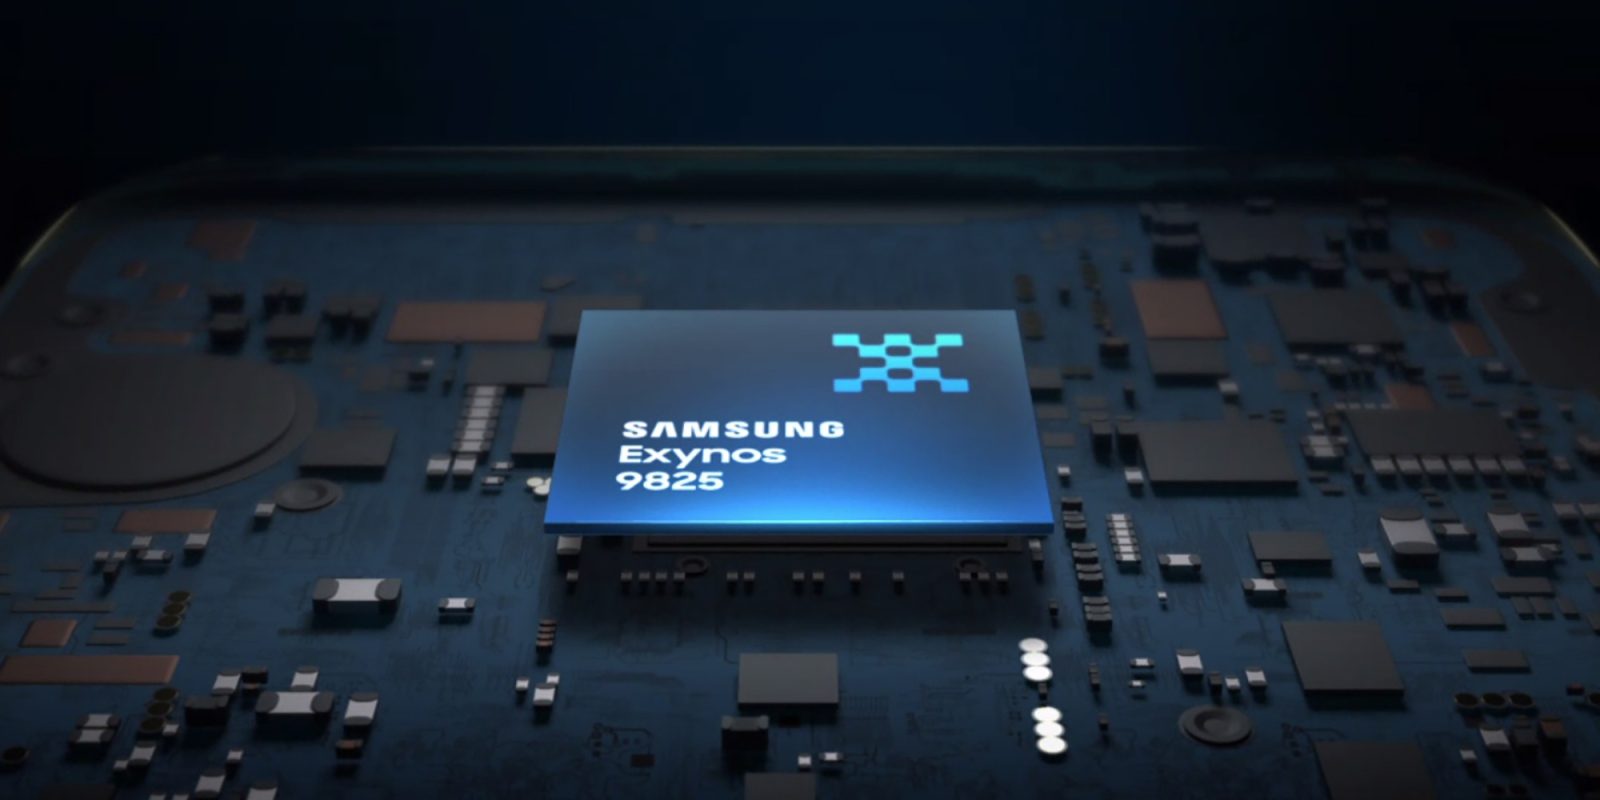 Samsung CPU Exynos 9825